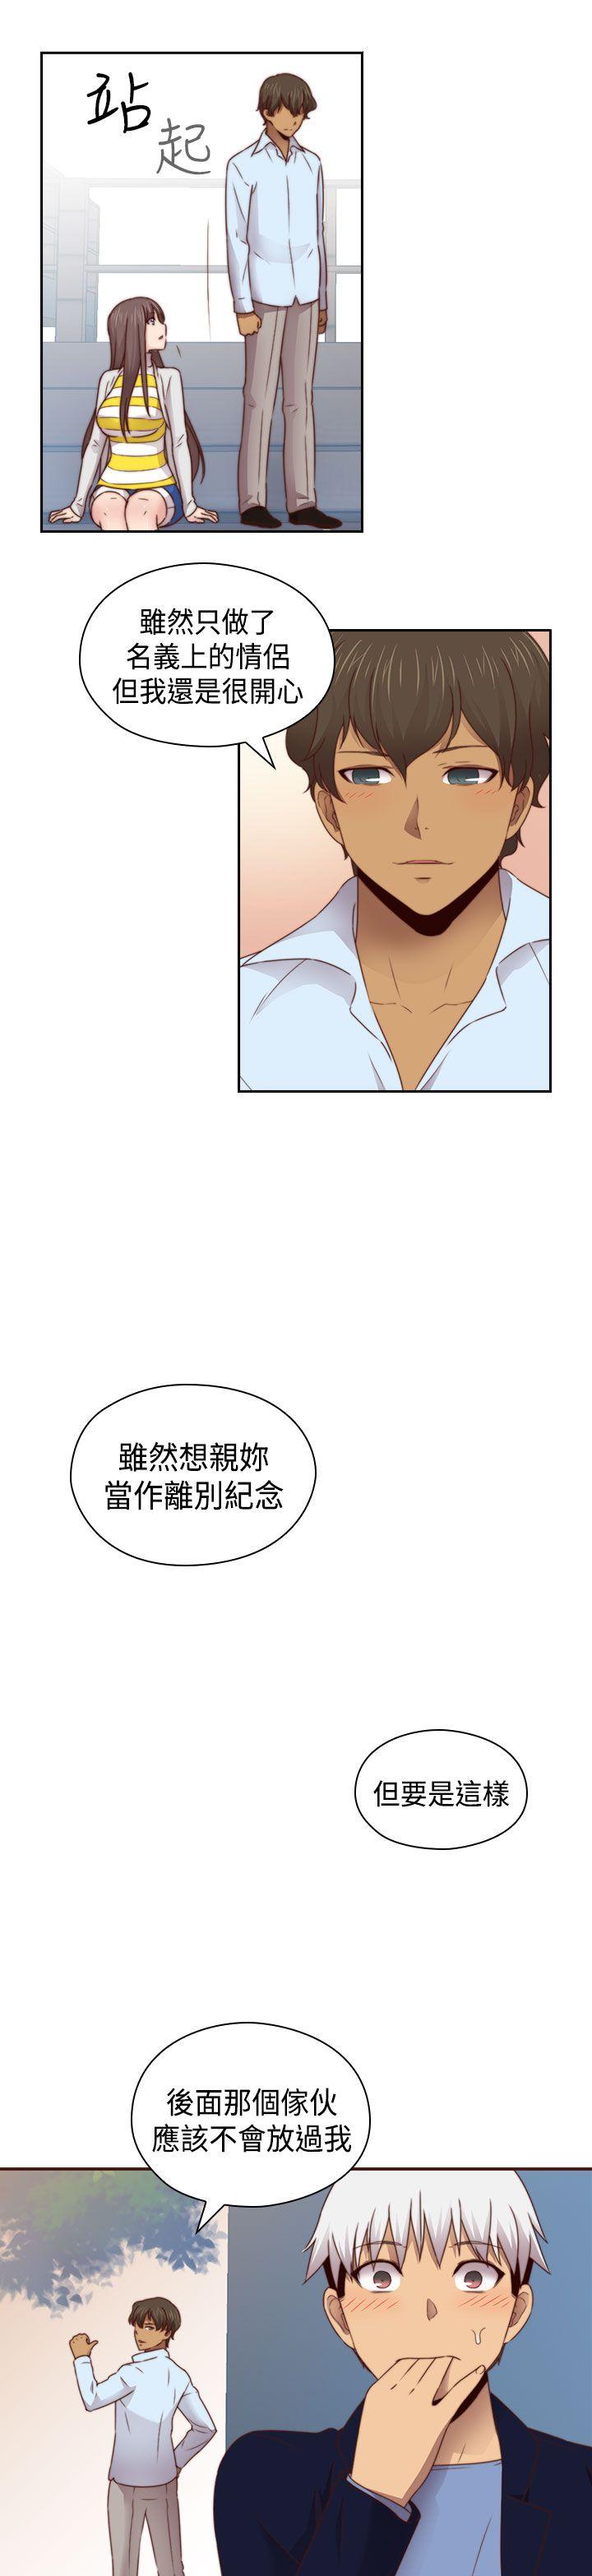 韩国污漫画 H校園 第68话 24